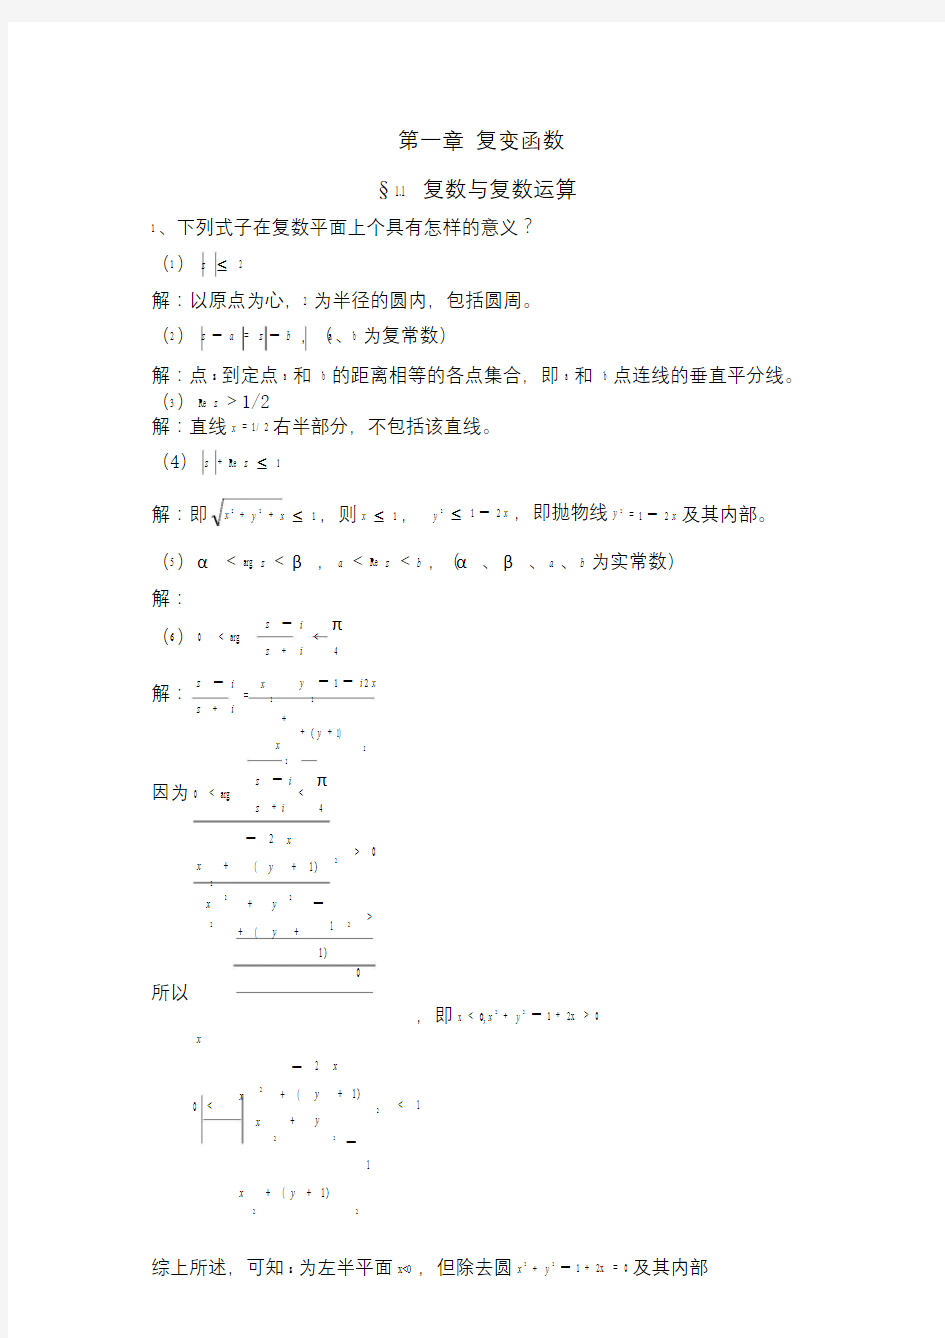 数学物理方法第一章作业答案